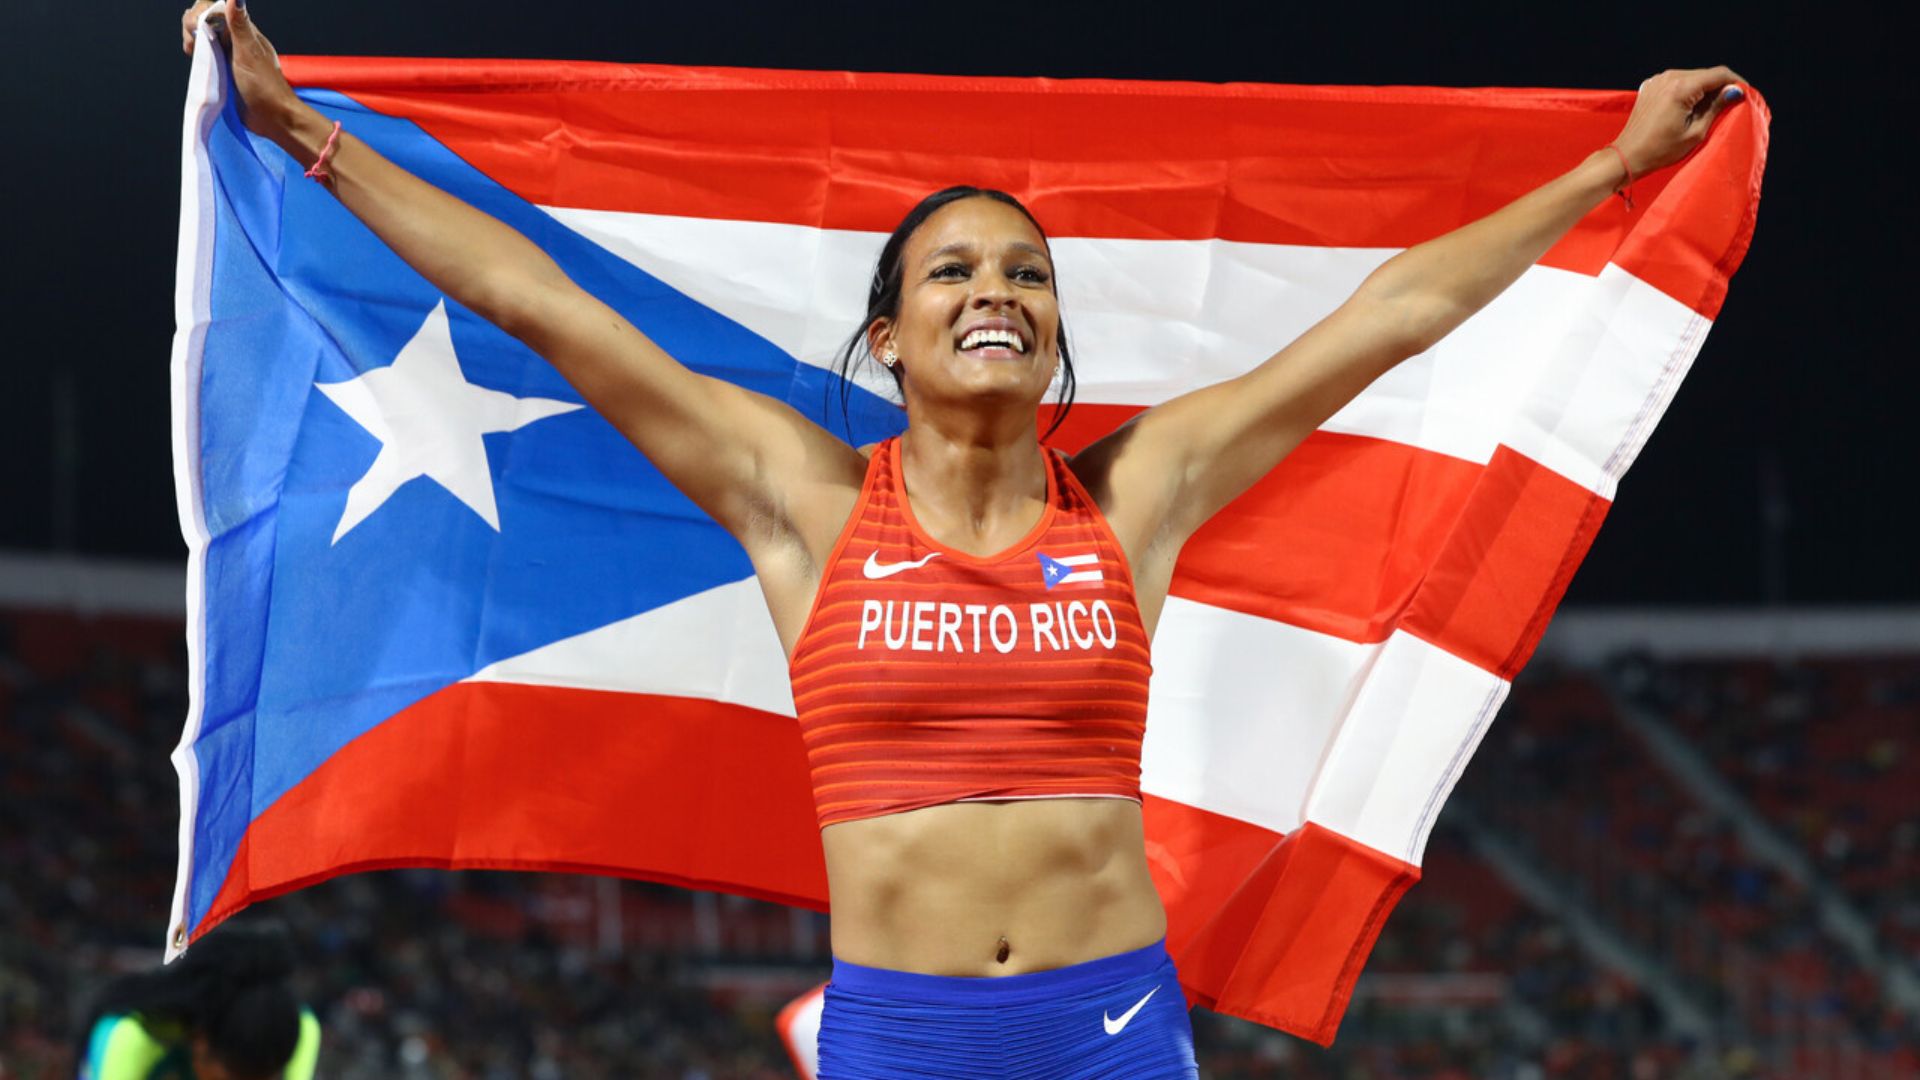 Alysbeth Félix makes history for Puerto Rico in the heptathlon